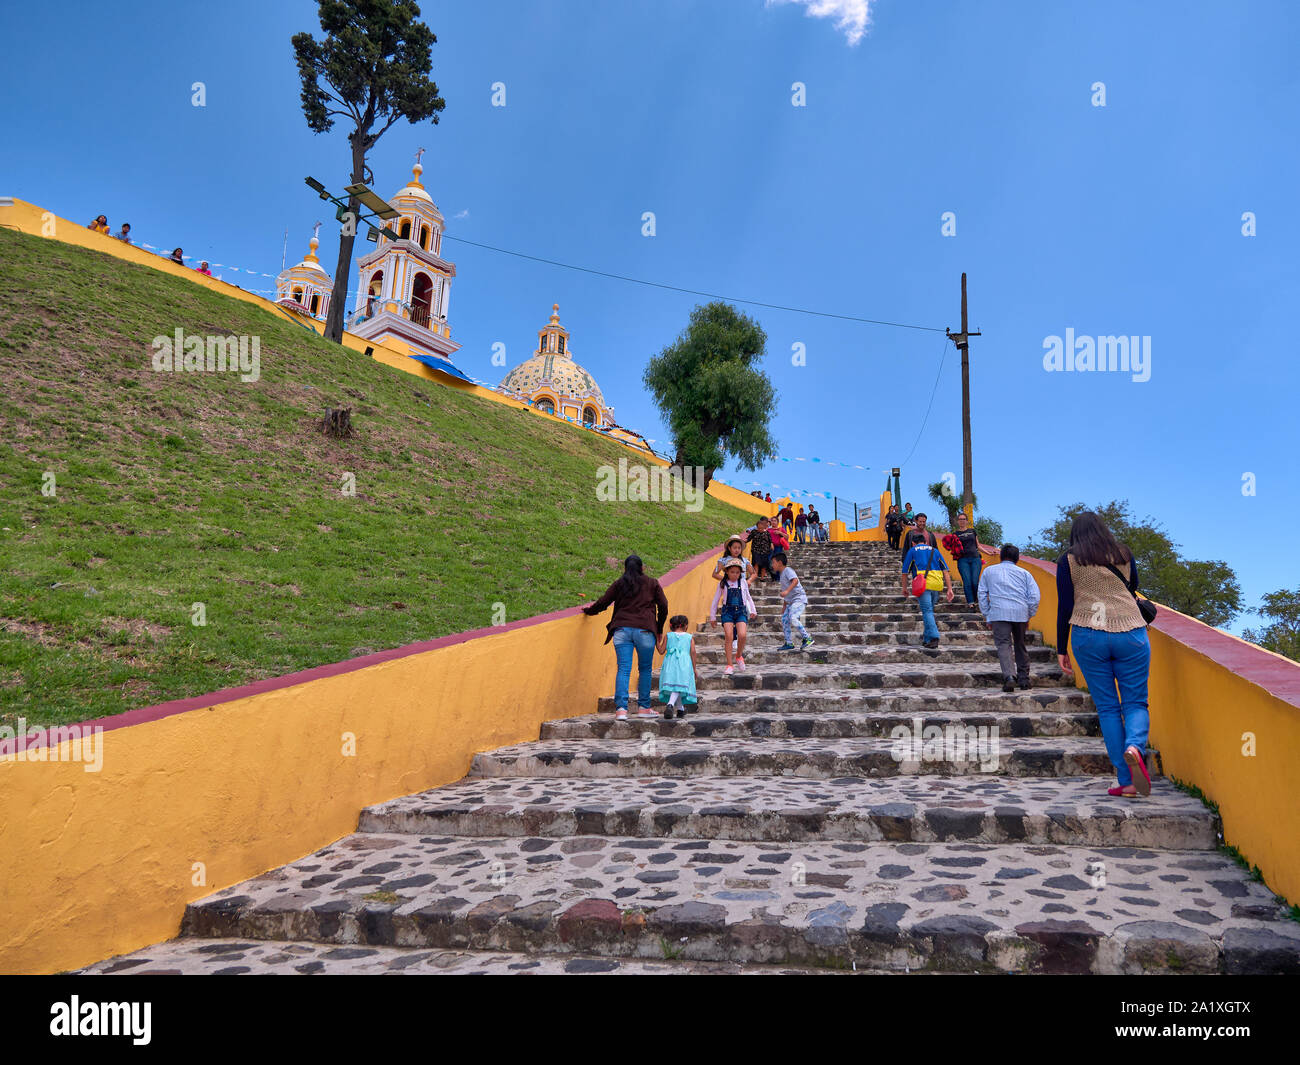 San pedro Cholula, México, 30 de septiembre de 2018 - Escalera de ascenso hacia el Santuario de Nuestra Señora de los remedios santuario con turistas y cielo azul. Foto de stock